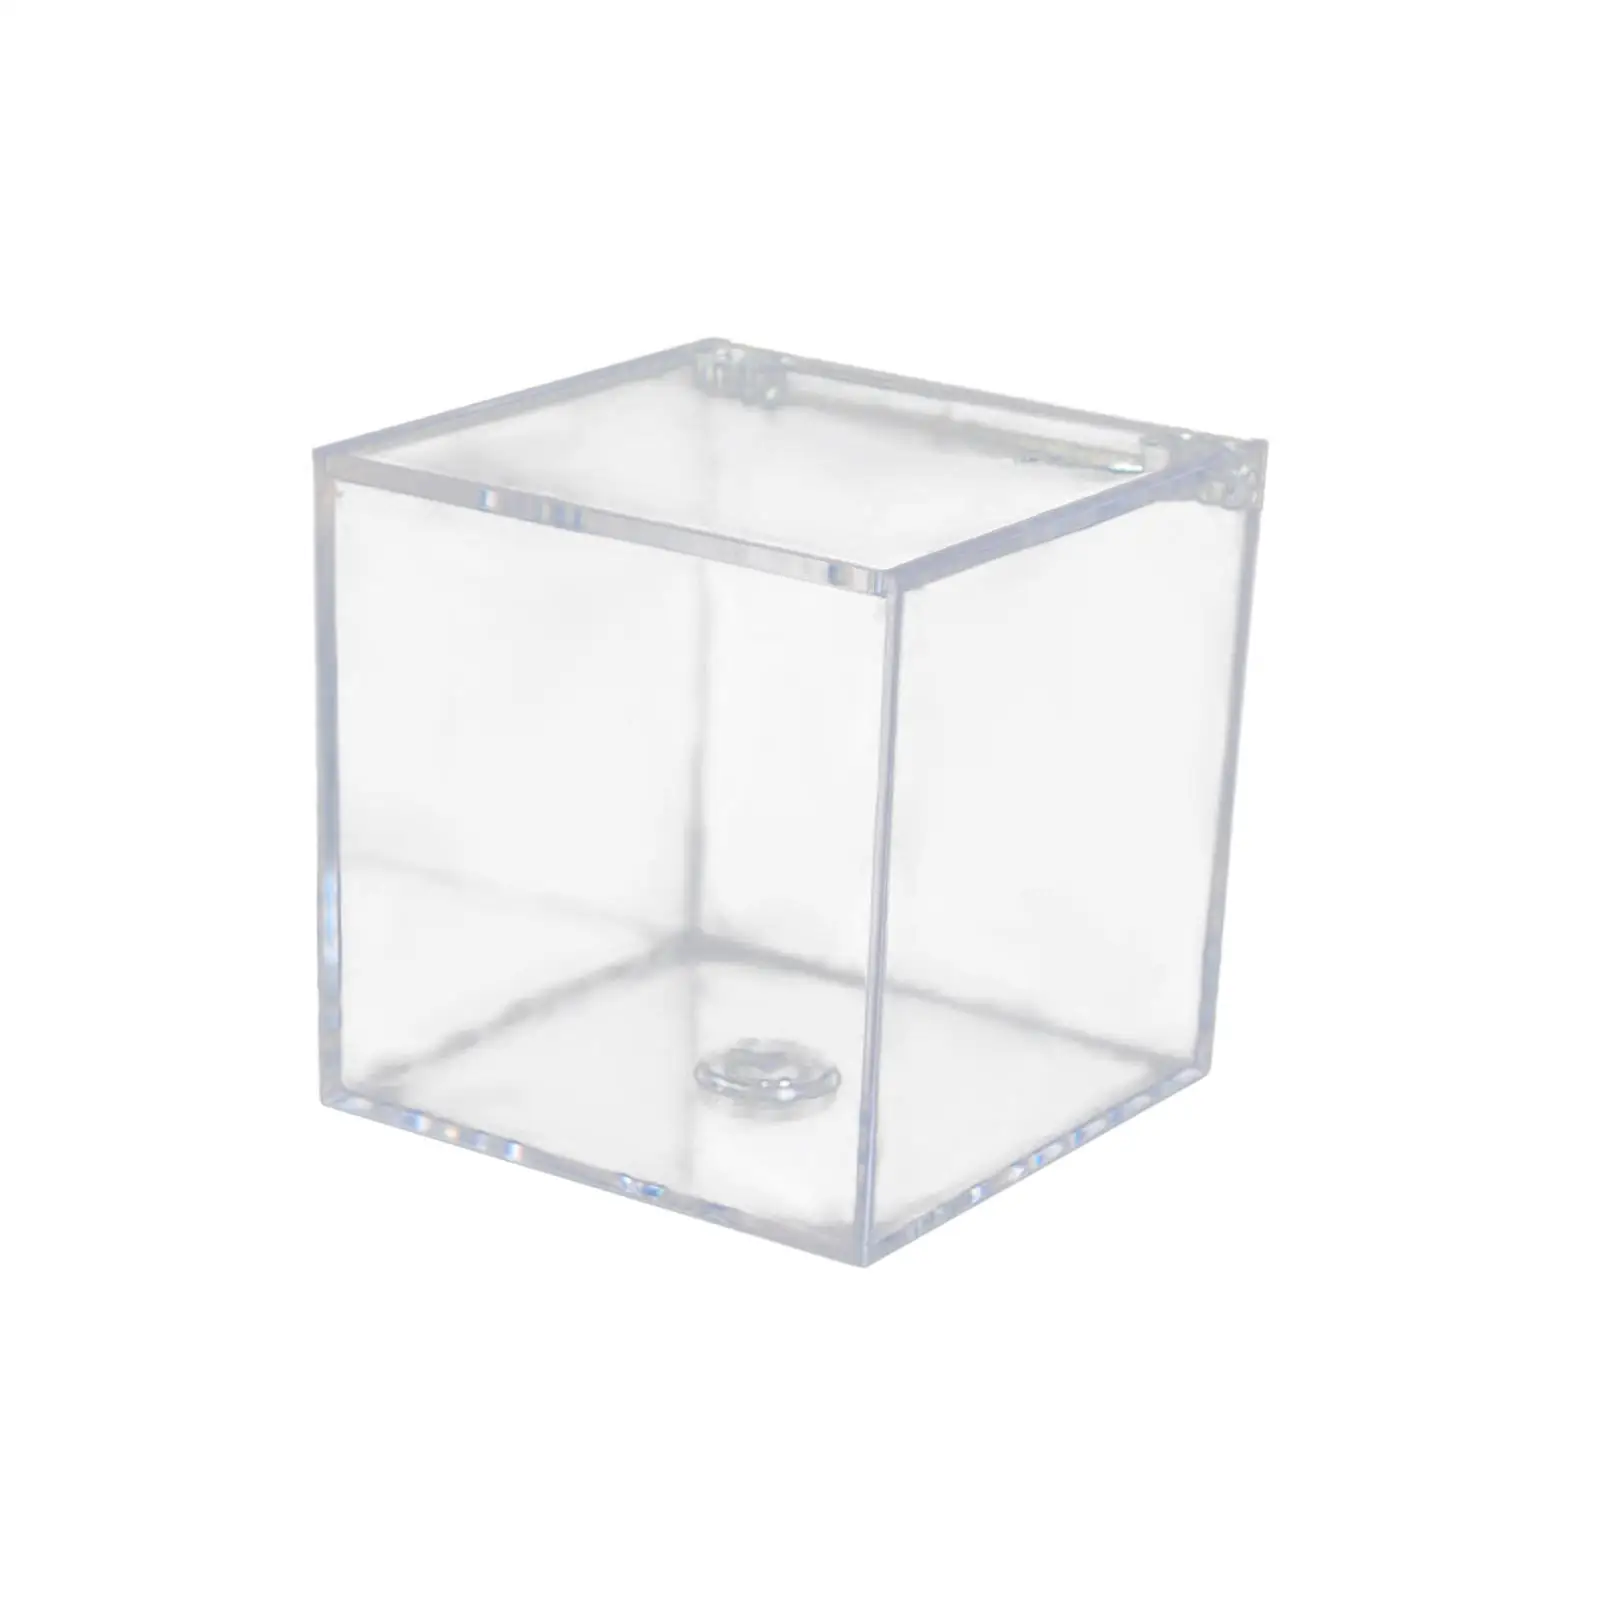 Acrylic Clear Box Gift Box with Lids Jewelry Box storage Box for Tiny Jewelry Centerpiece Cosmetics Birthday Decoration